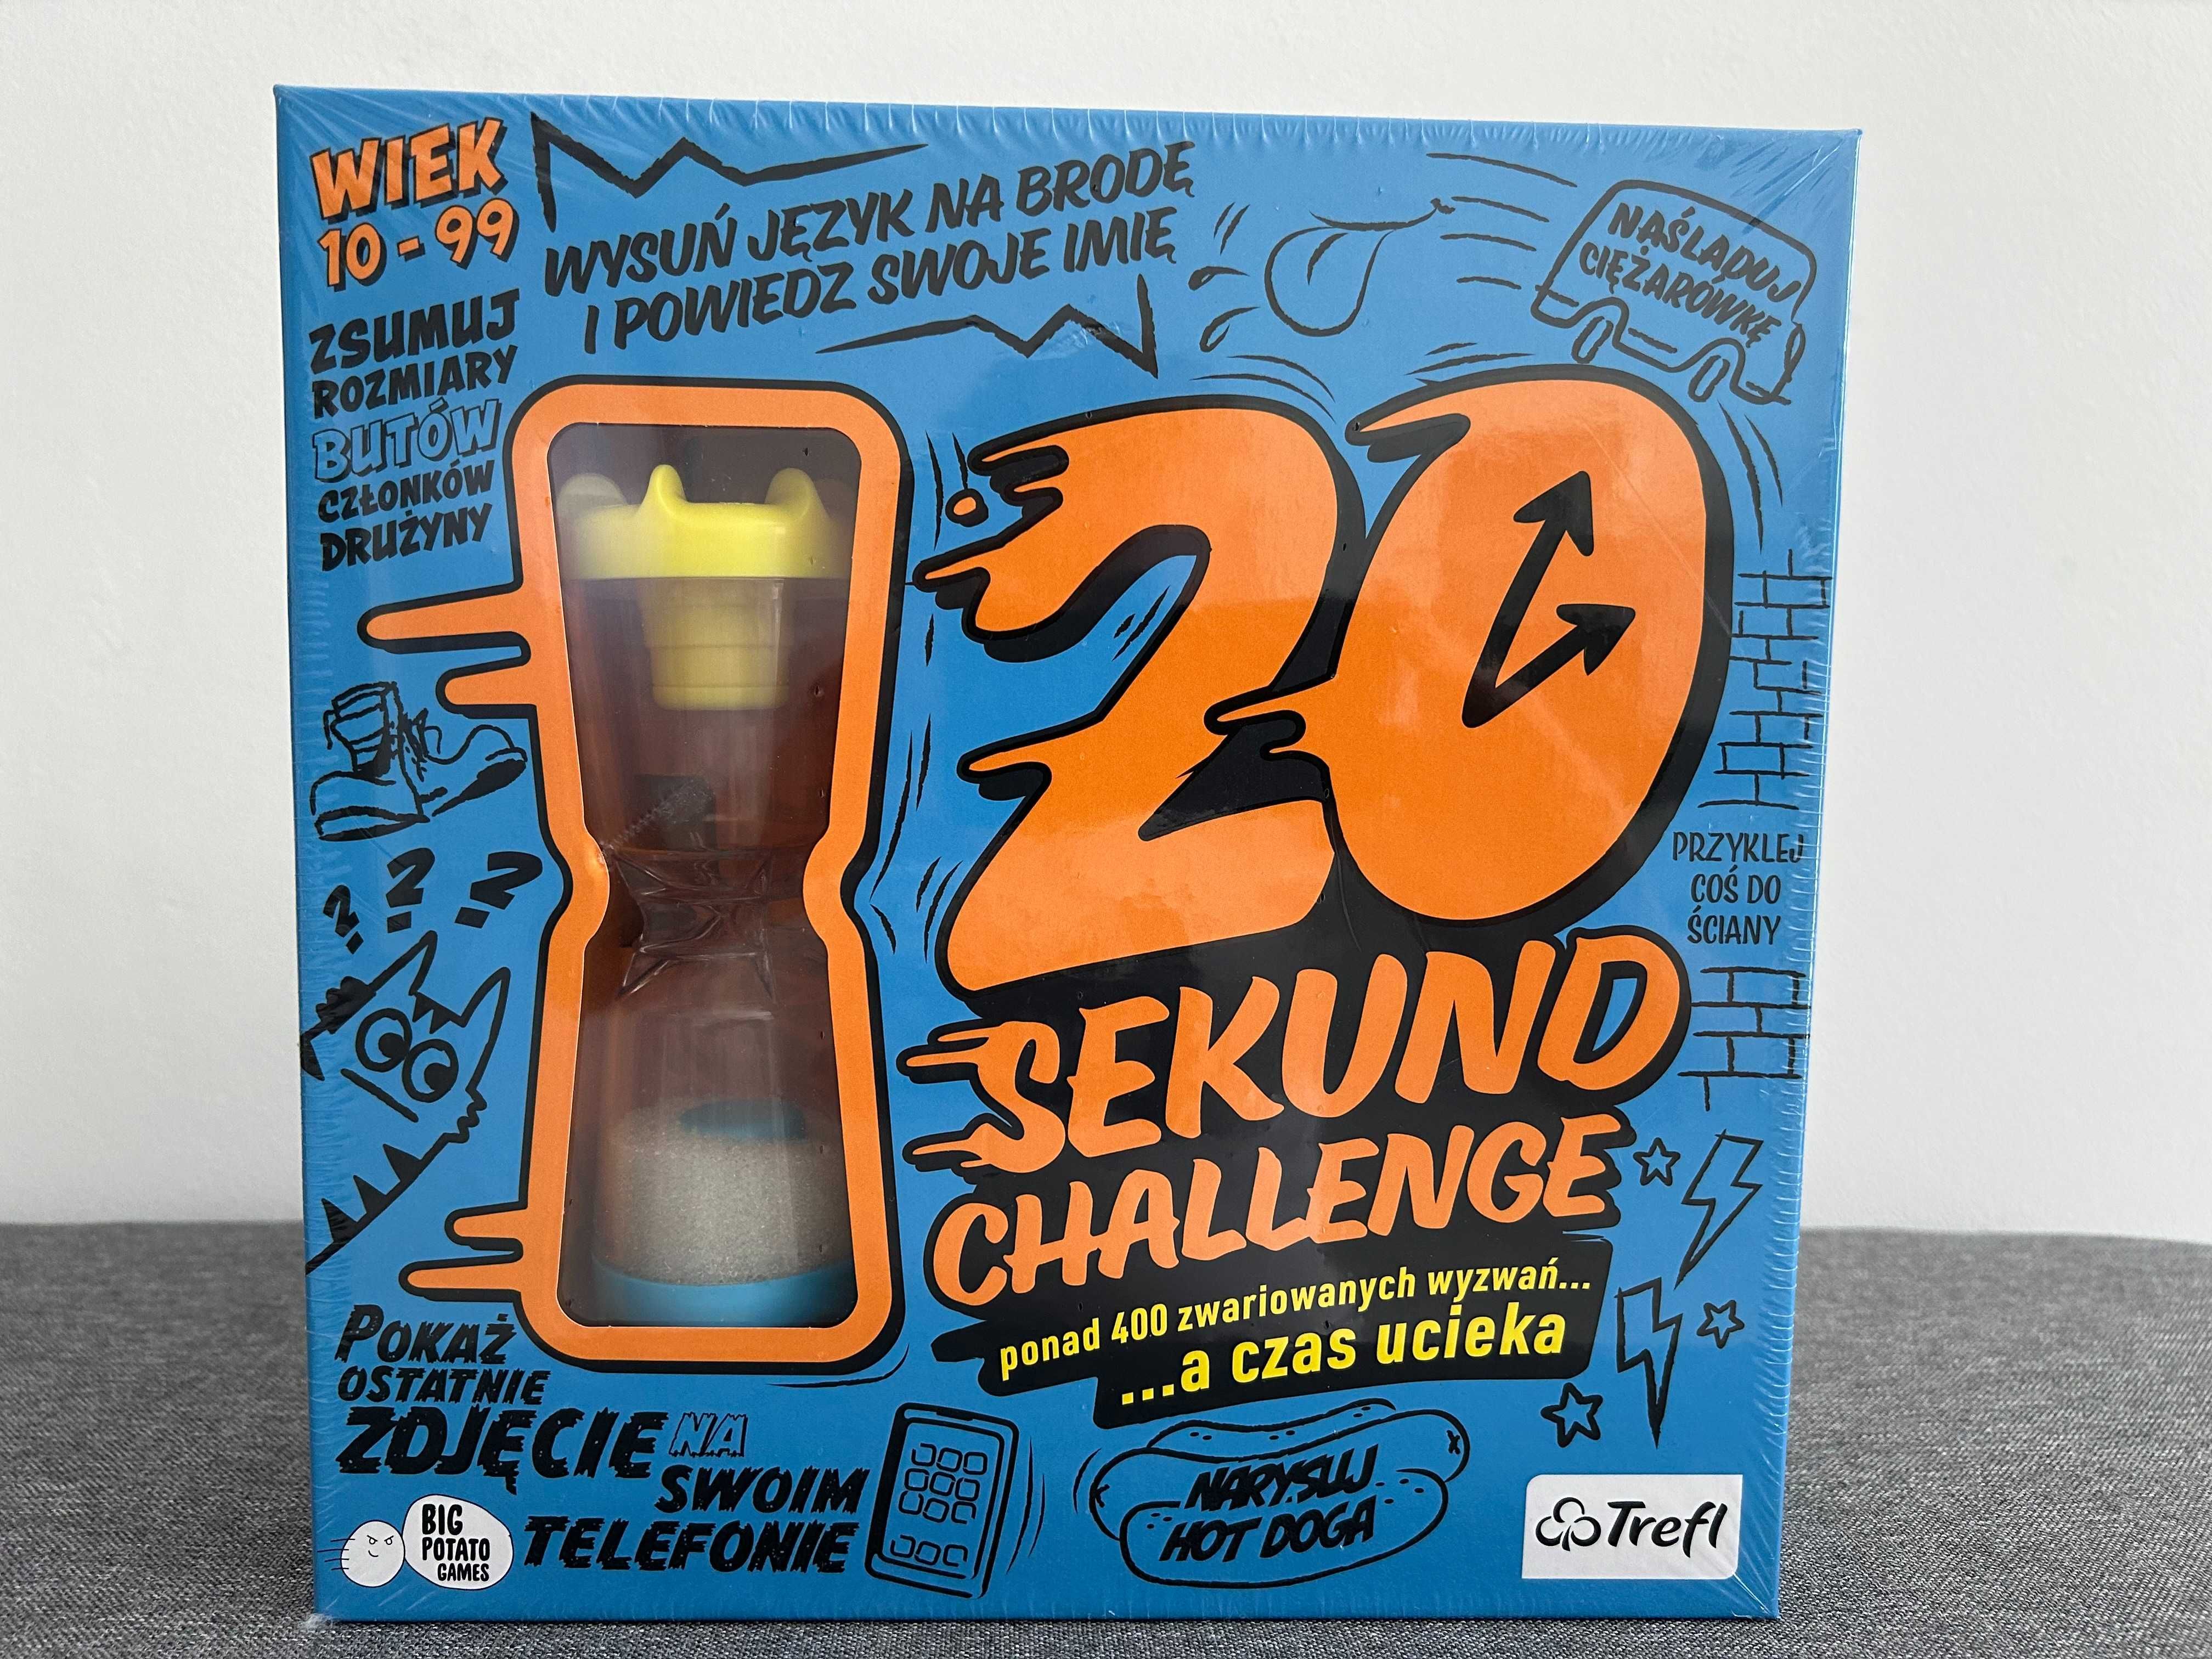 20 Sekund Challenge Gra Imprezowa Trefl
Nowa